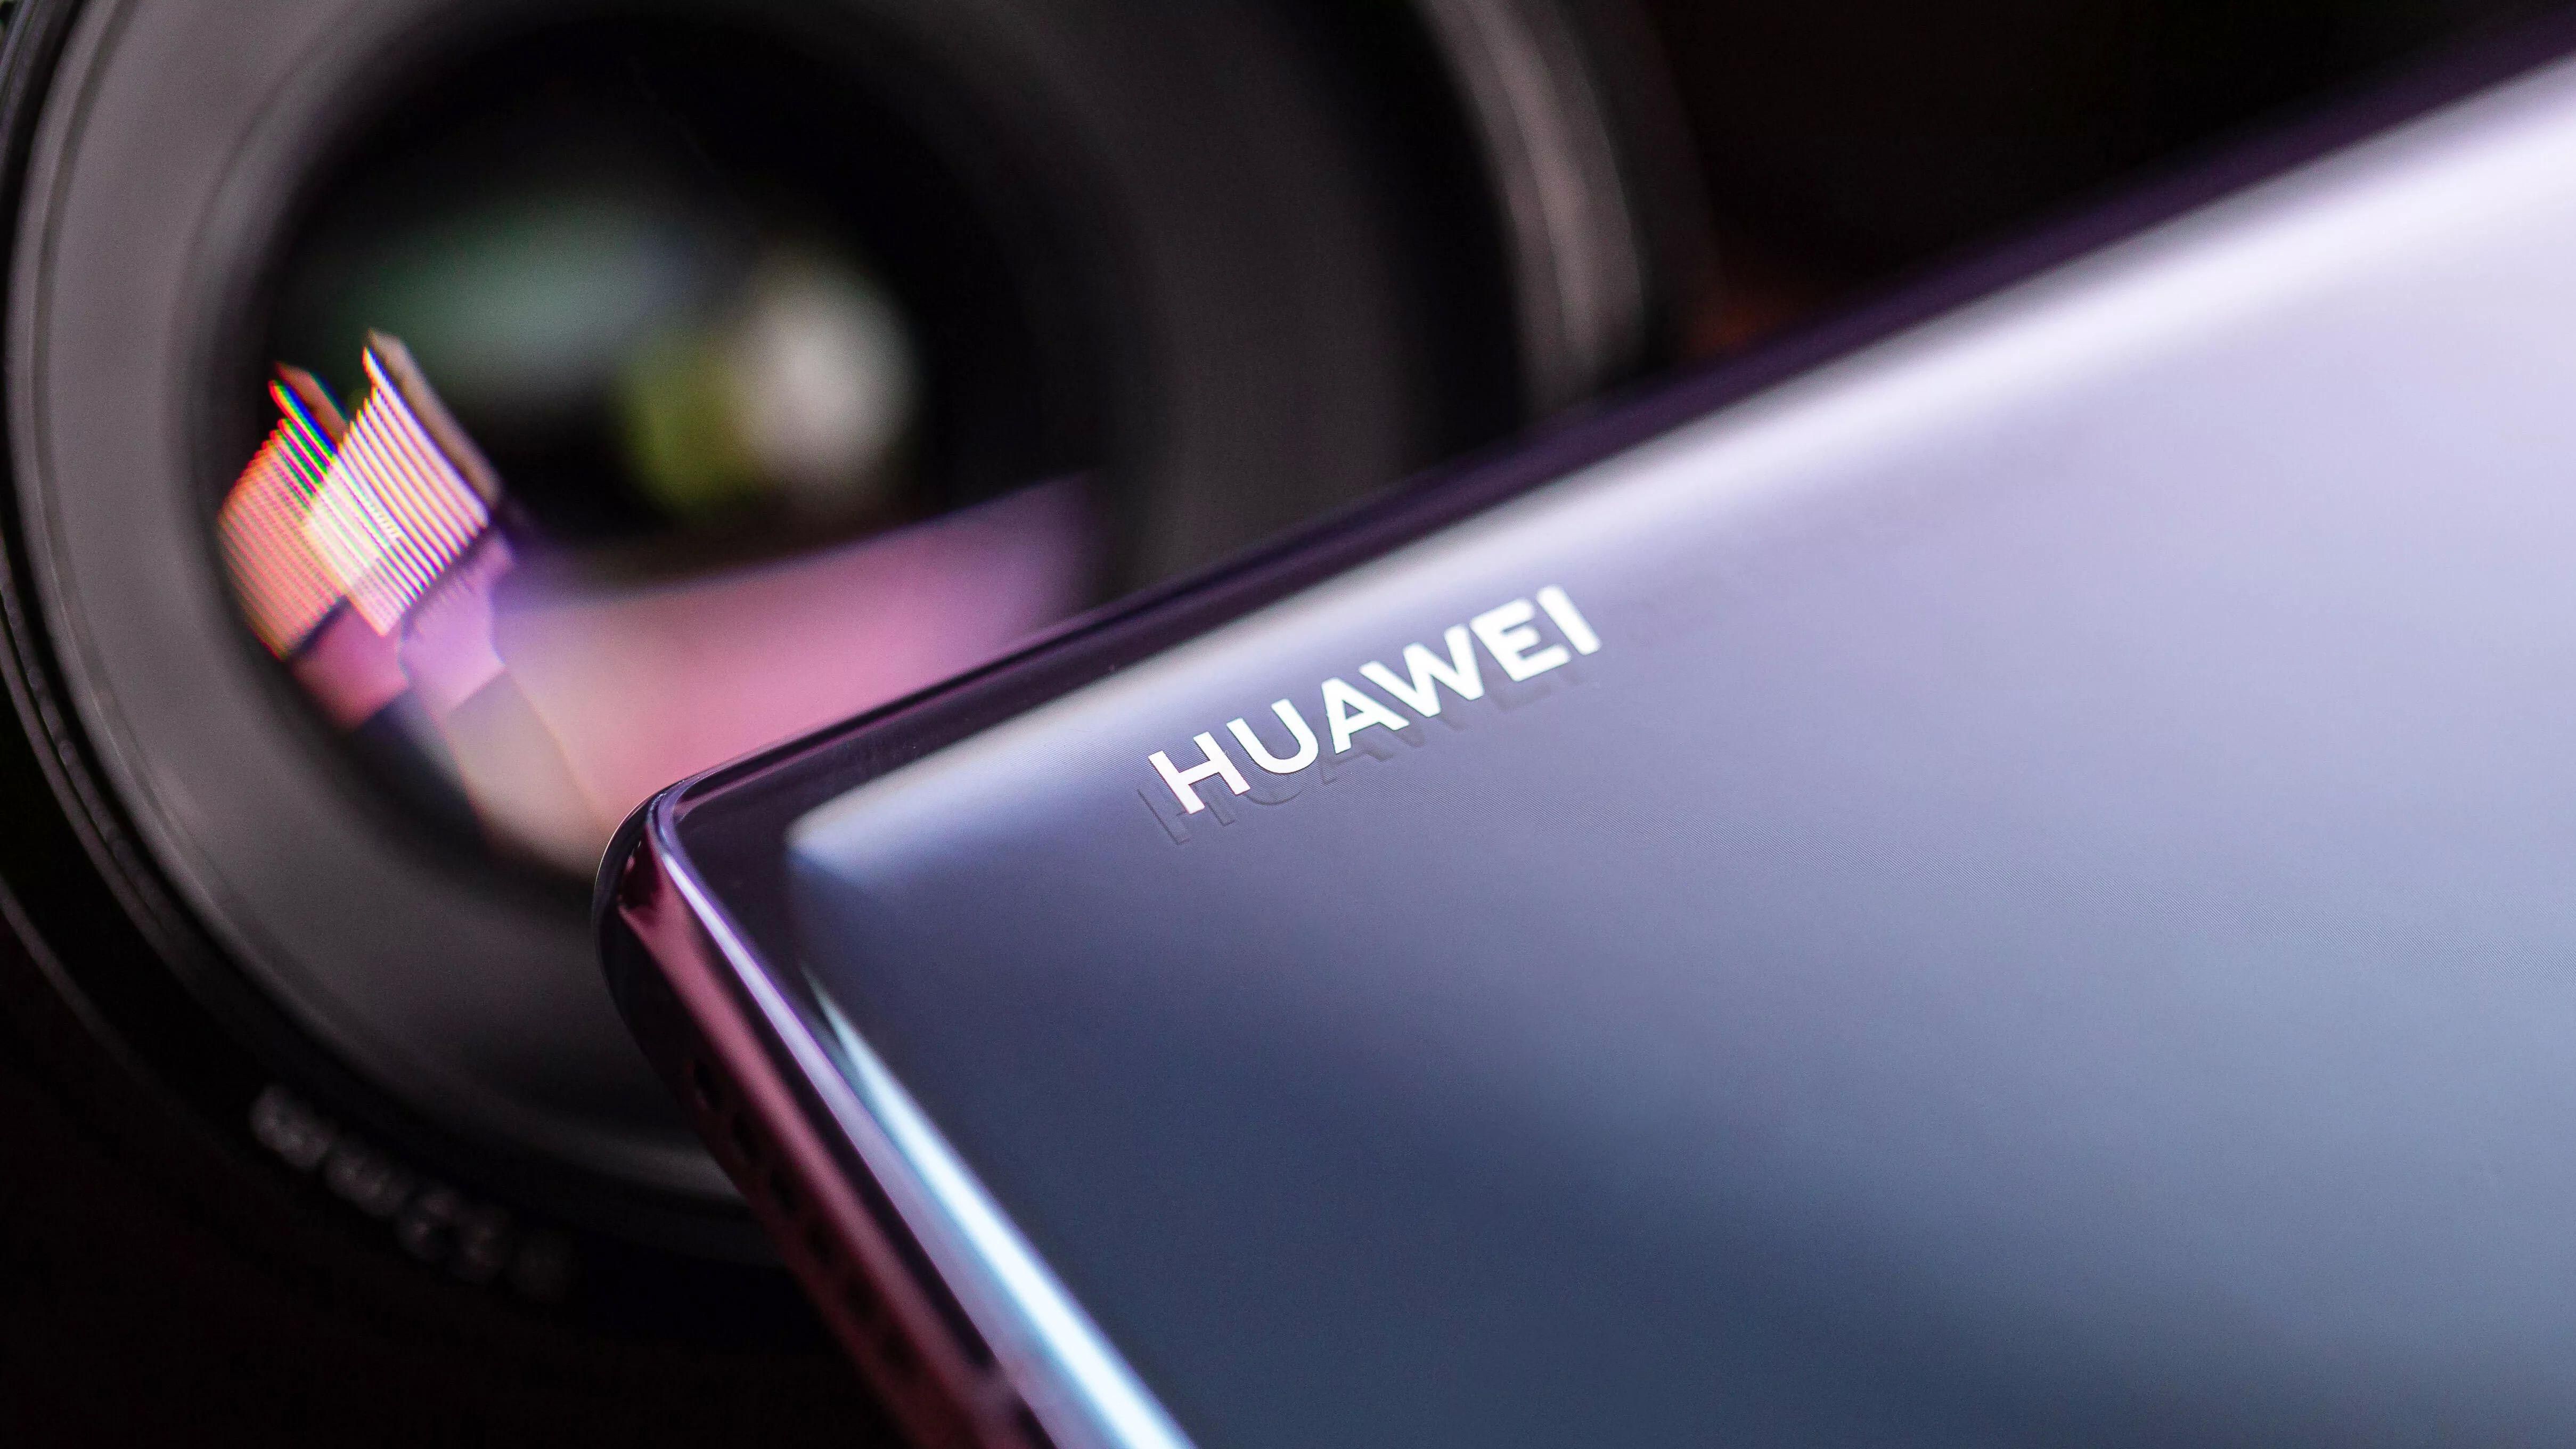 Появились новые изображения смартфона Huawei P40 Pro: фото и особенности